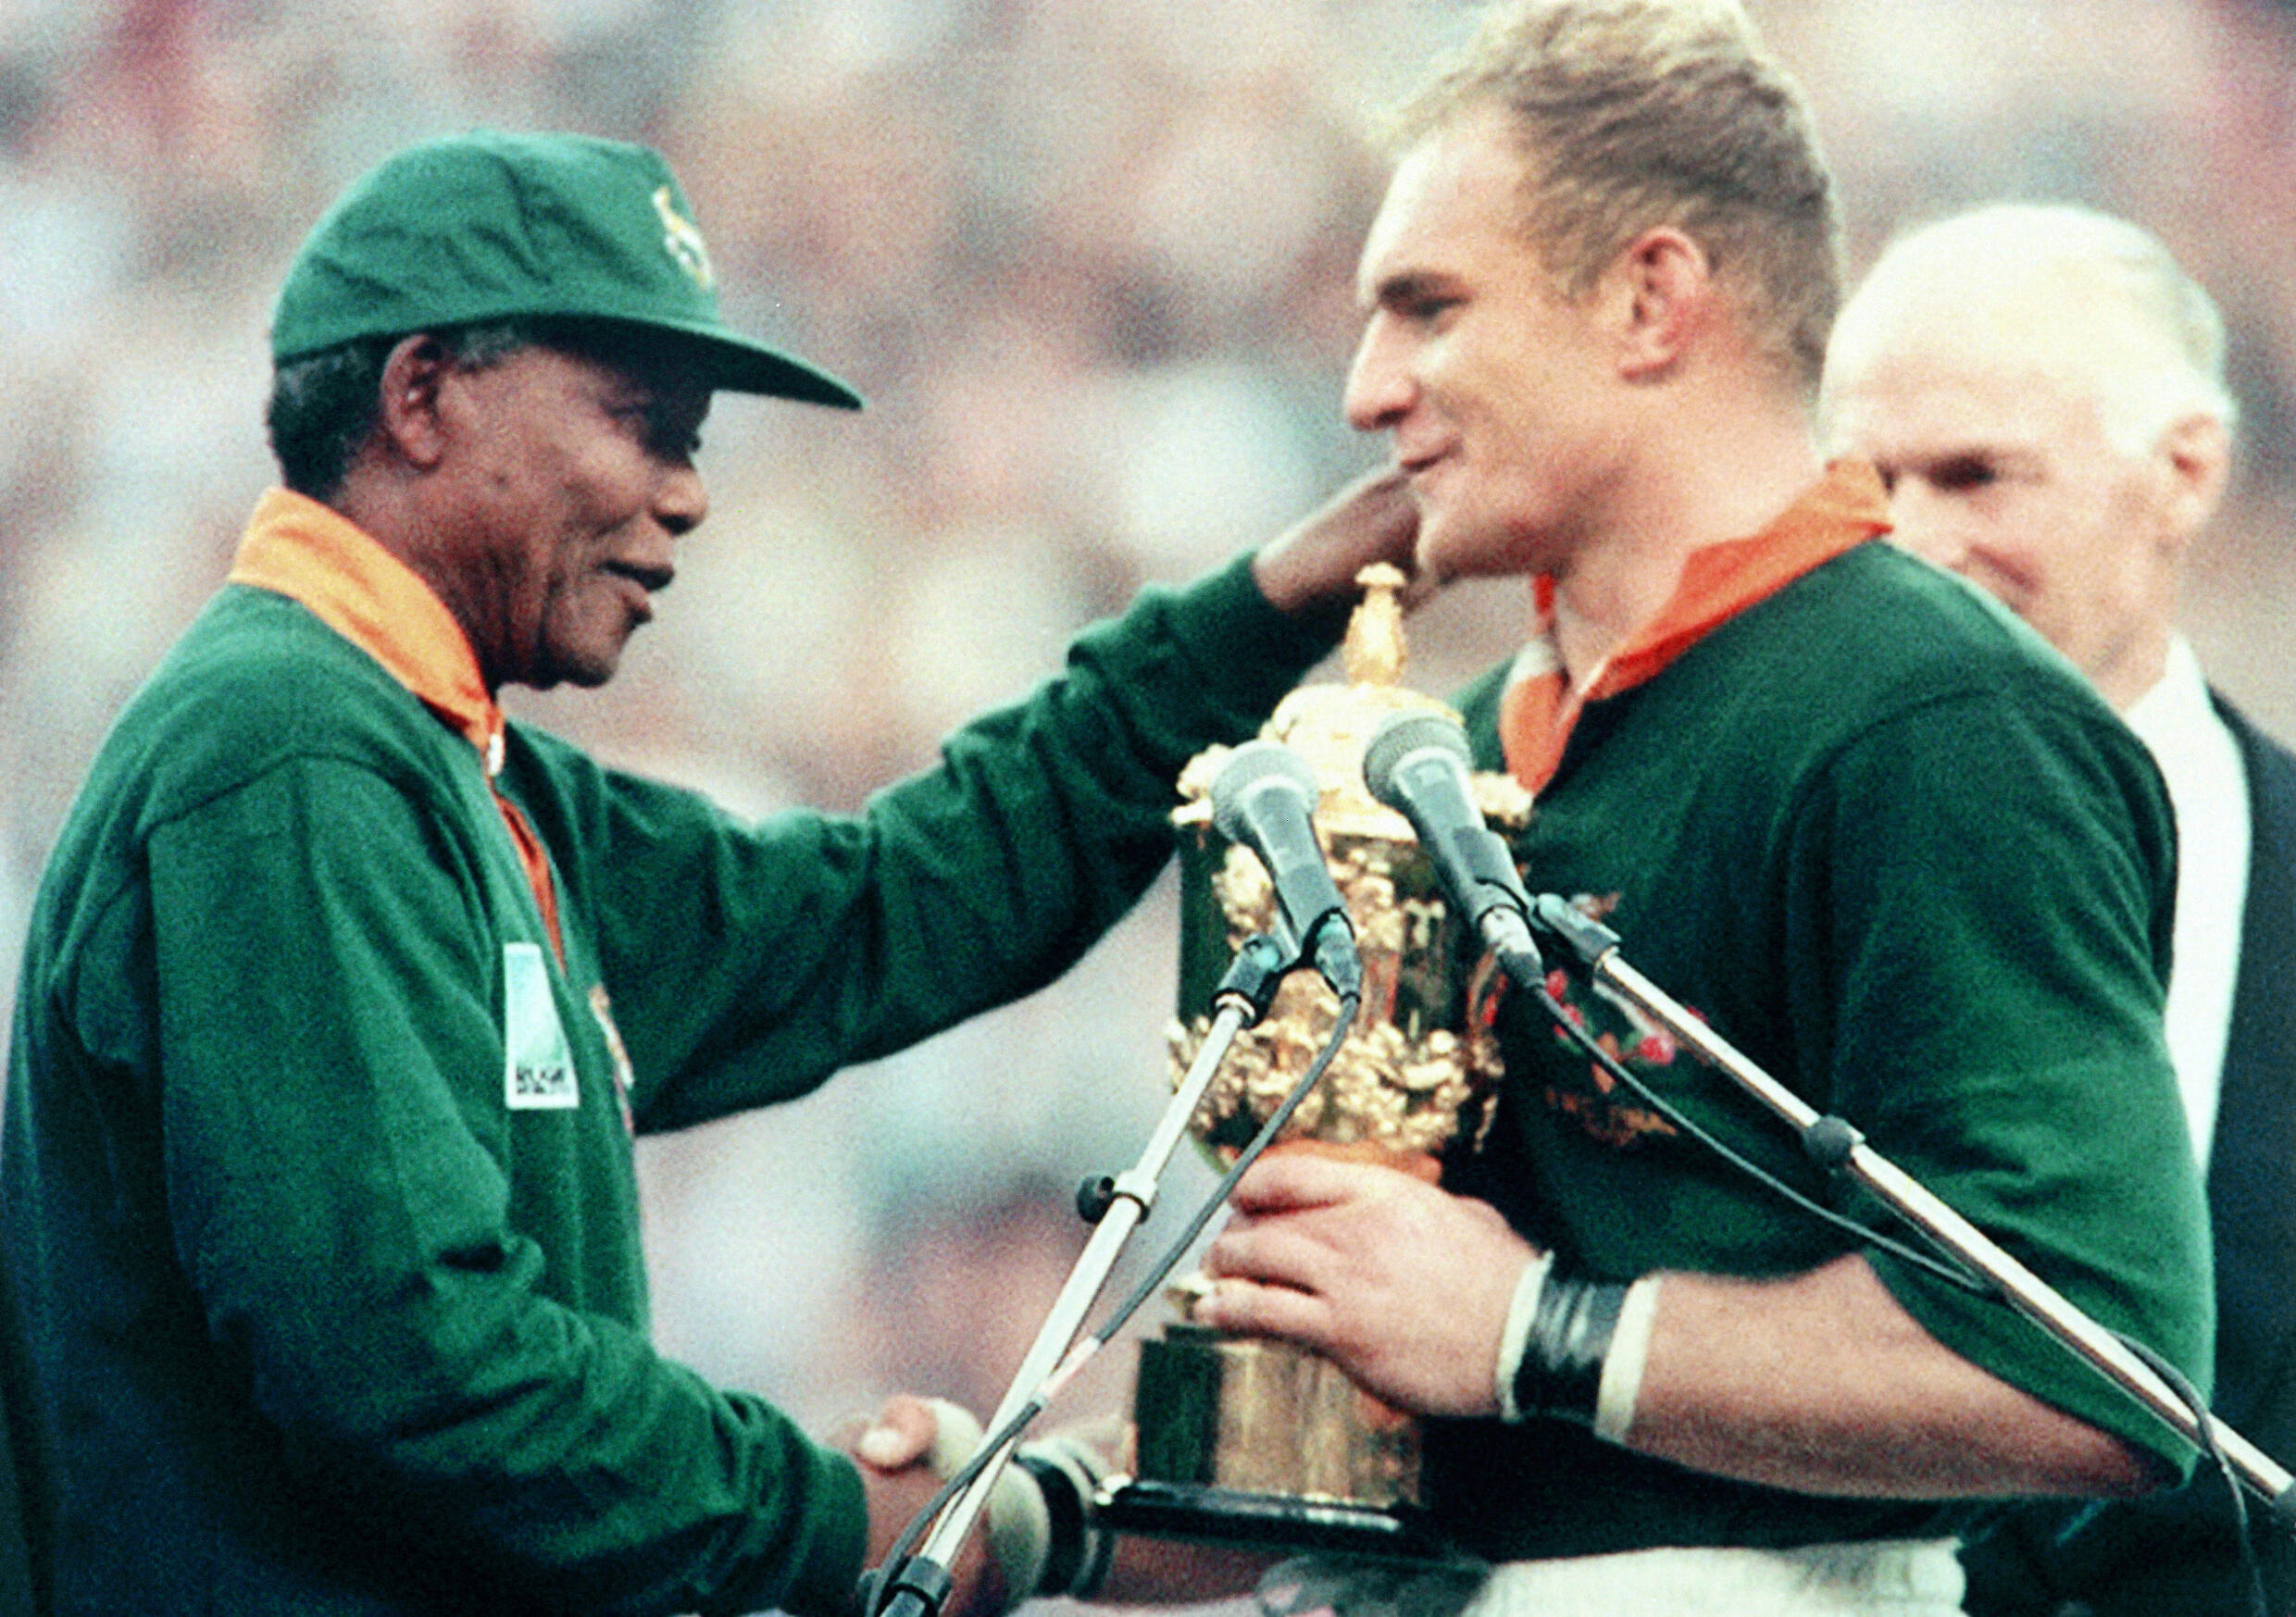 Der südafrikanische Präsident Nelson Mandela gratuliert dem Springbok-Kapitän François Pienaar, nachdem er ihm am 24. Juni 1995 in Johannesburg die William Webb Ellis-Trophäe überreicht hatte.